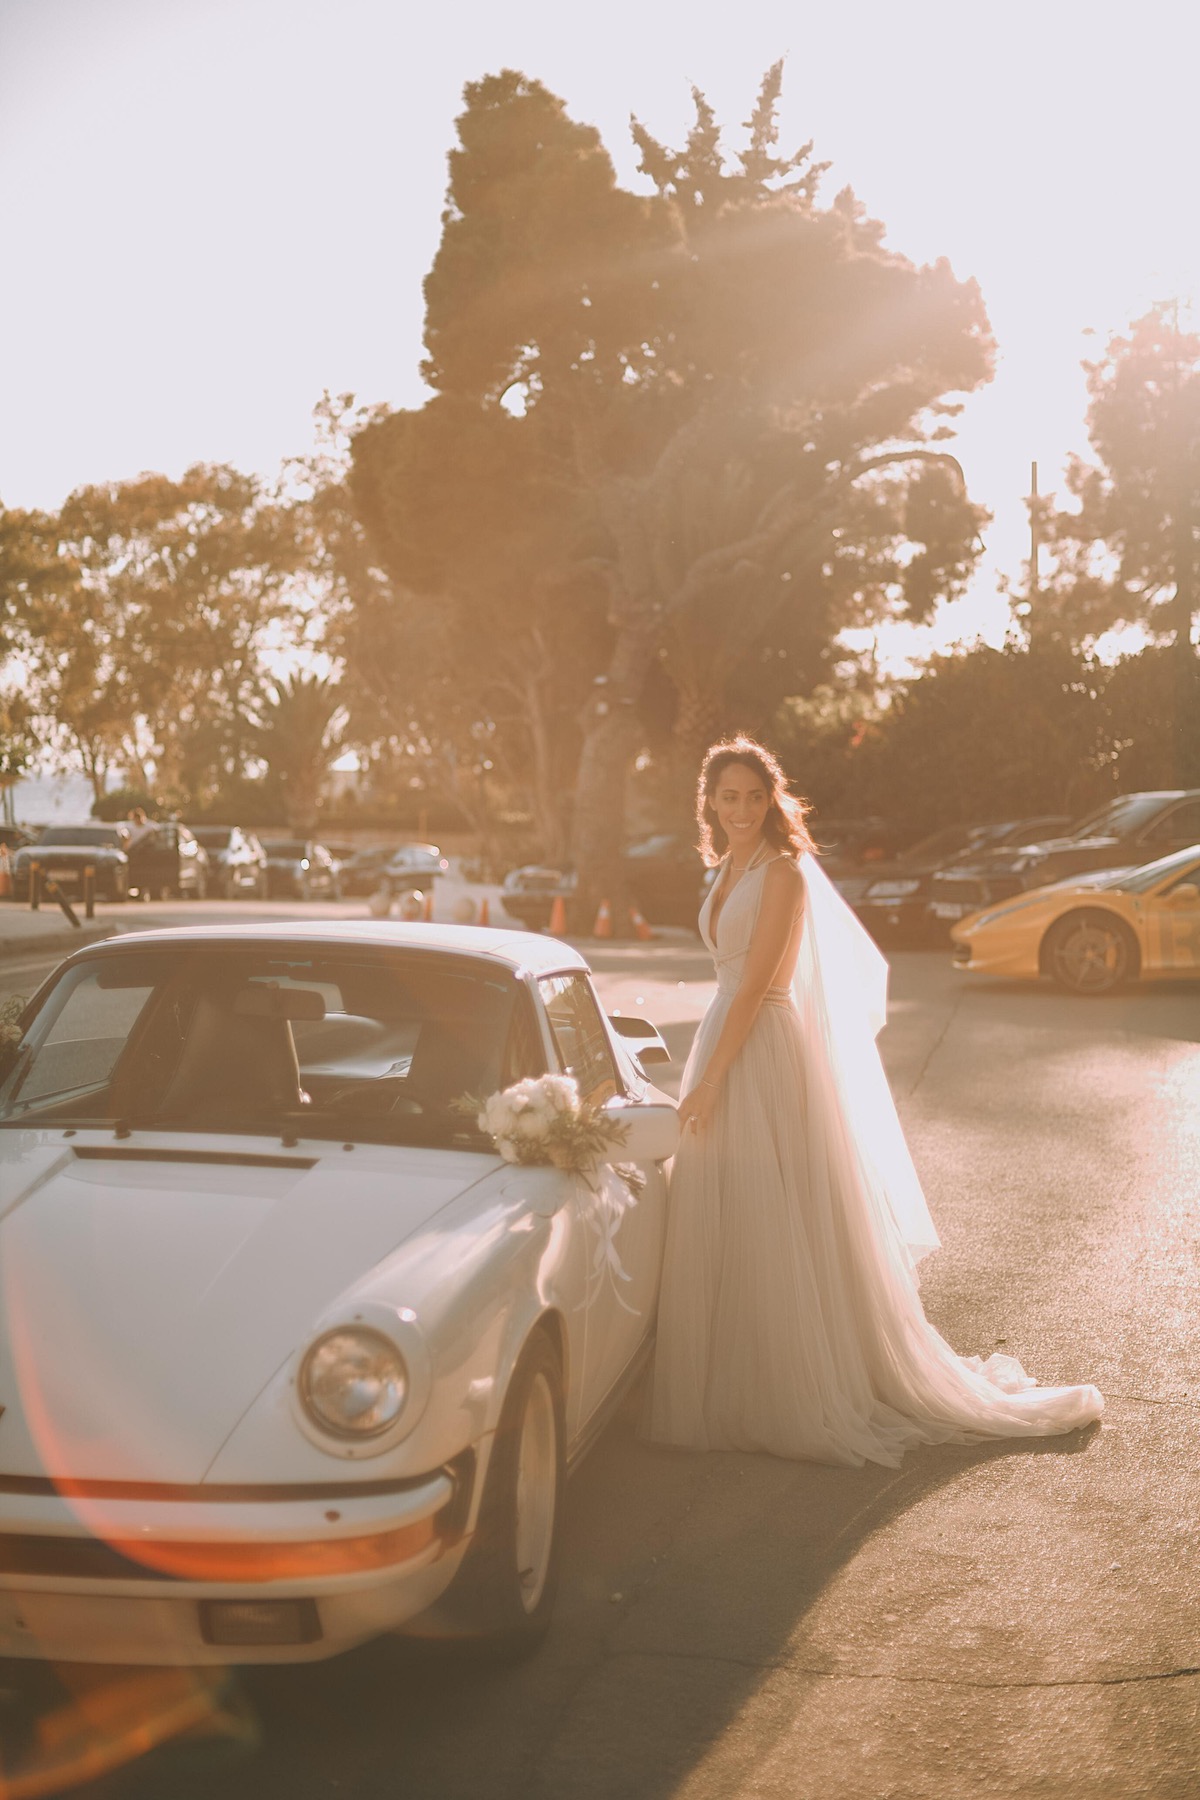 Destination wedding bride in Greece with vintage car